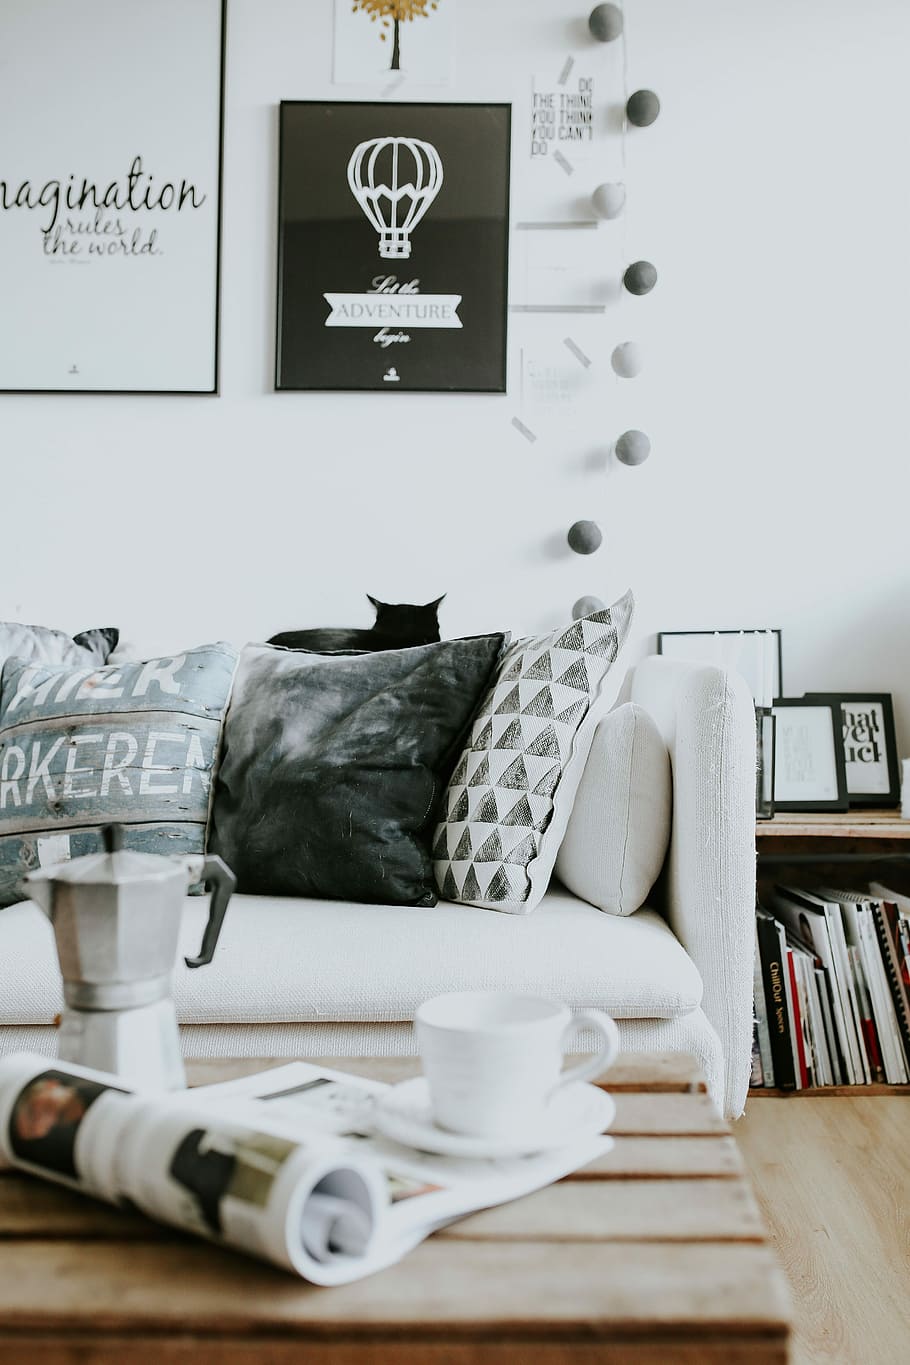 Contemporary black-and-white home decor, interior, sofa, magazines